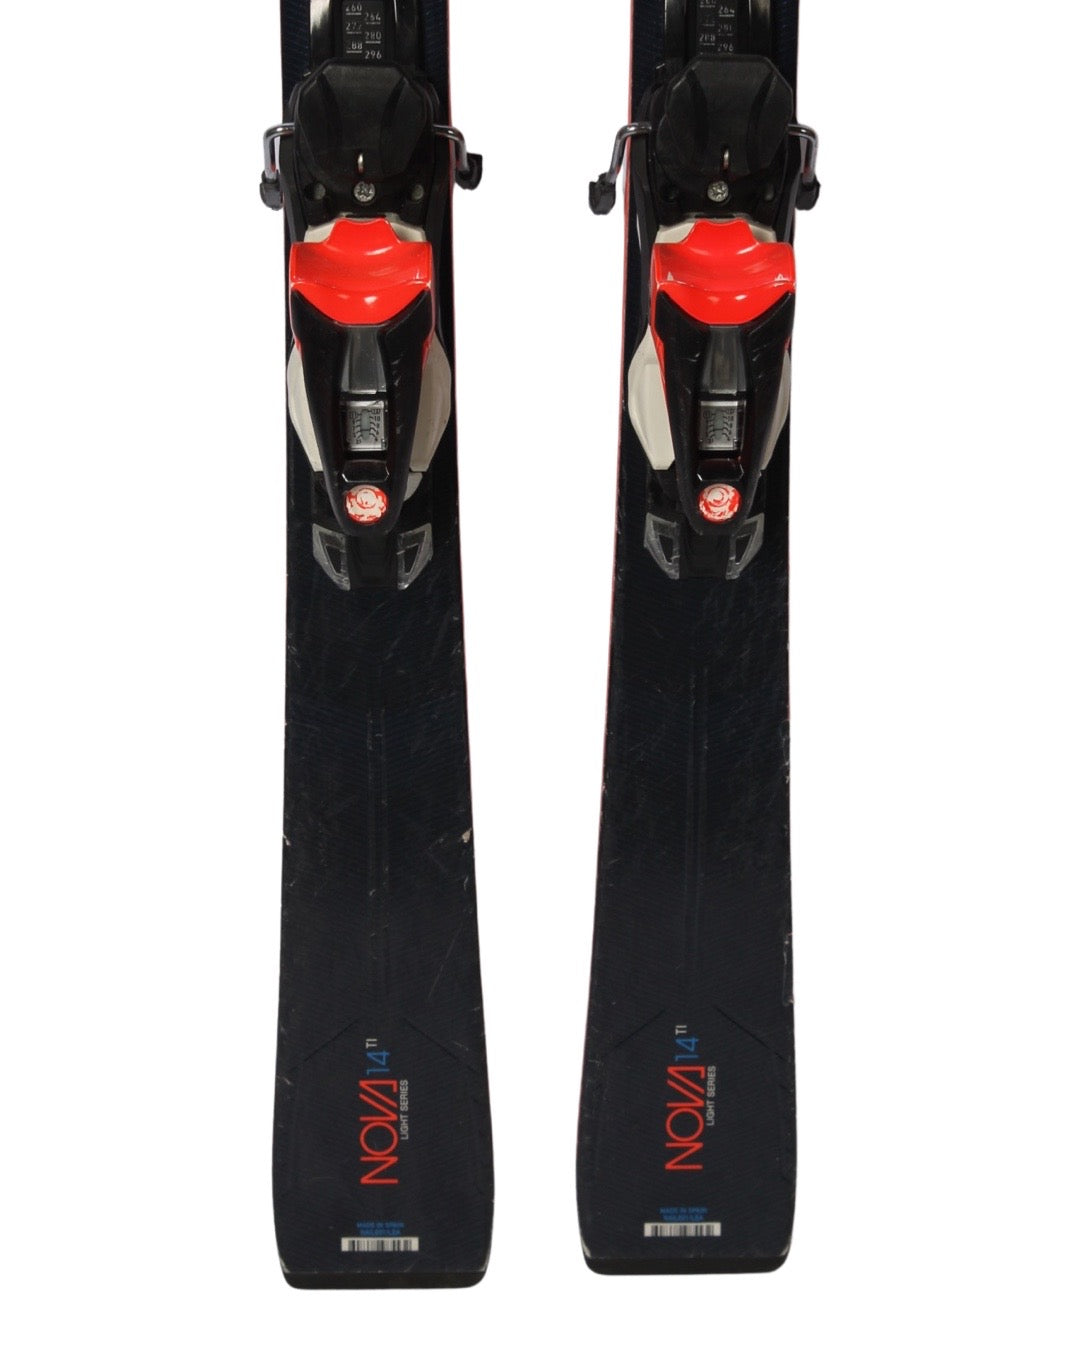 Ski - Rossignol Nova 14 TI - 1849 kr